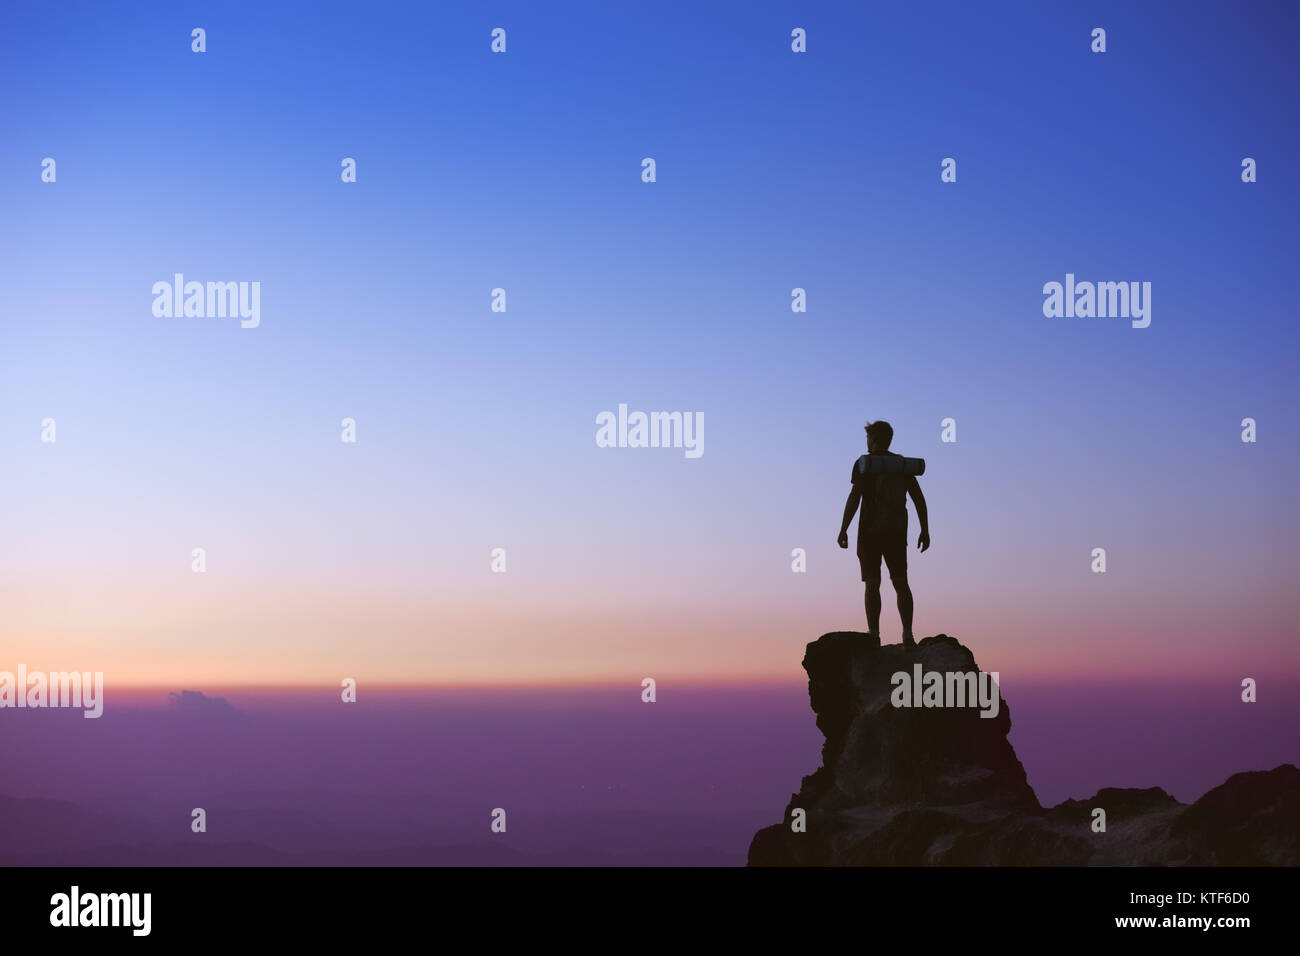 La silhouette de l'homme au sommet de montagne sur fond de ciel de coucher du soleil Banque D'Images